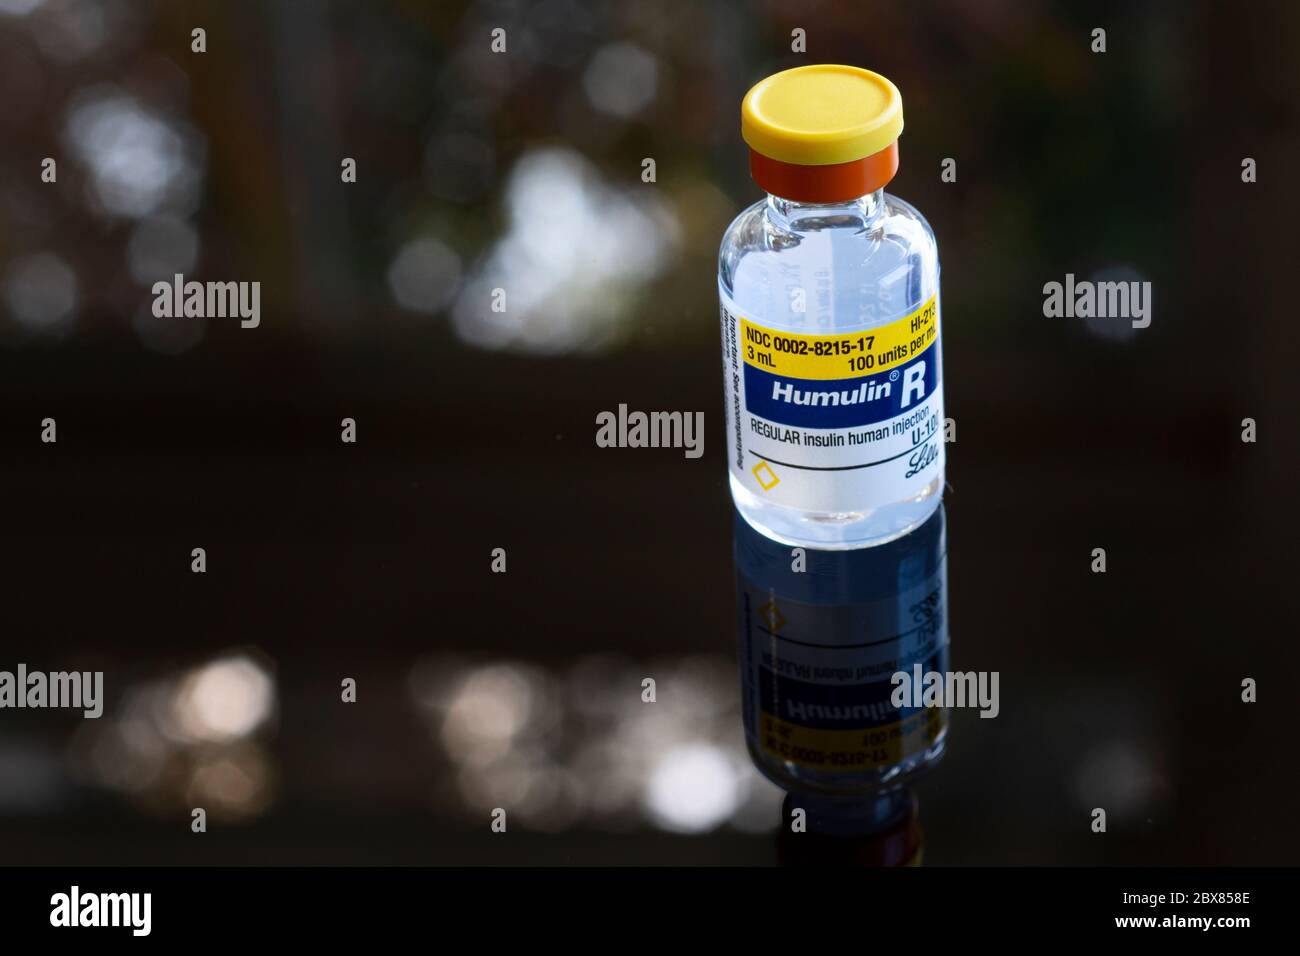 Portland, O marzo 15 2020. Un flaconcino di Humulin R Insulin, un farmaco essenziale per il diabete, su sfondo scuro. Foto Stock